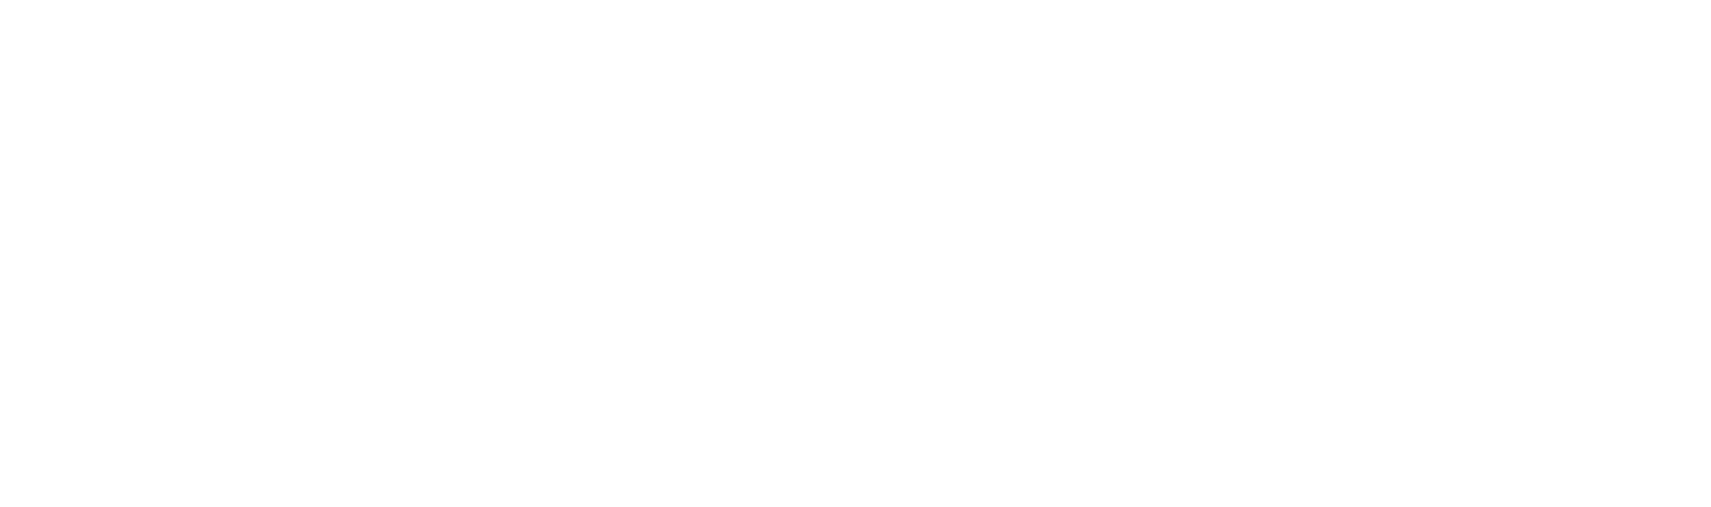 logo_white-2